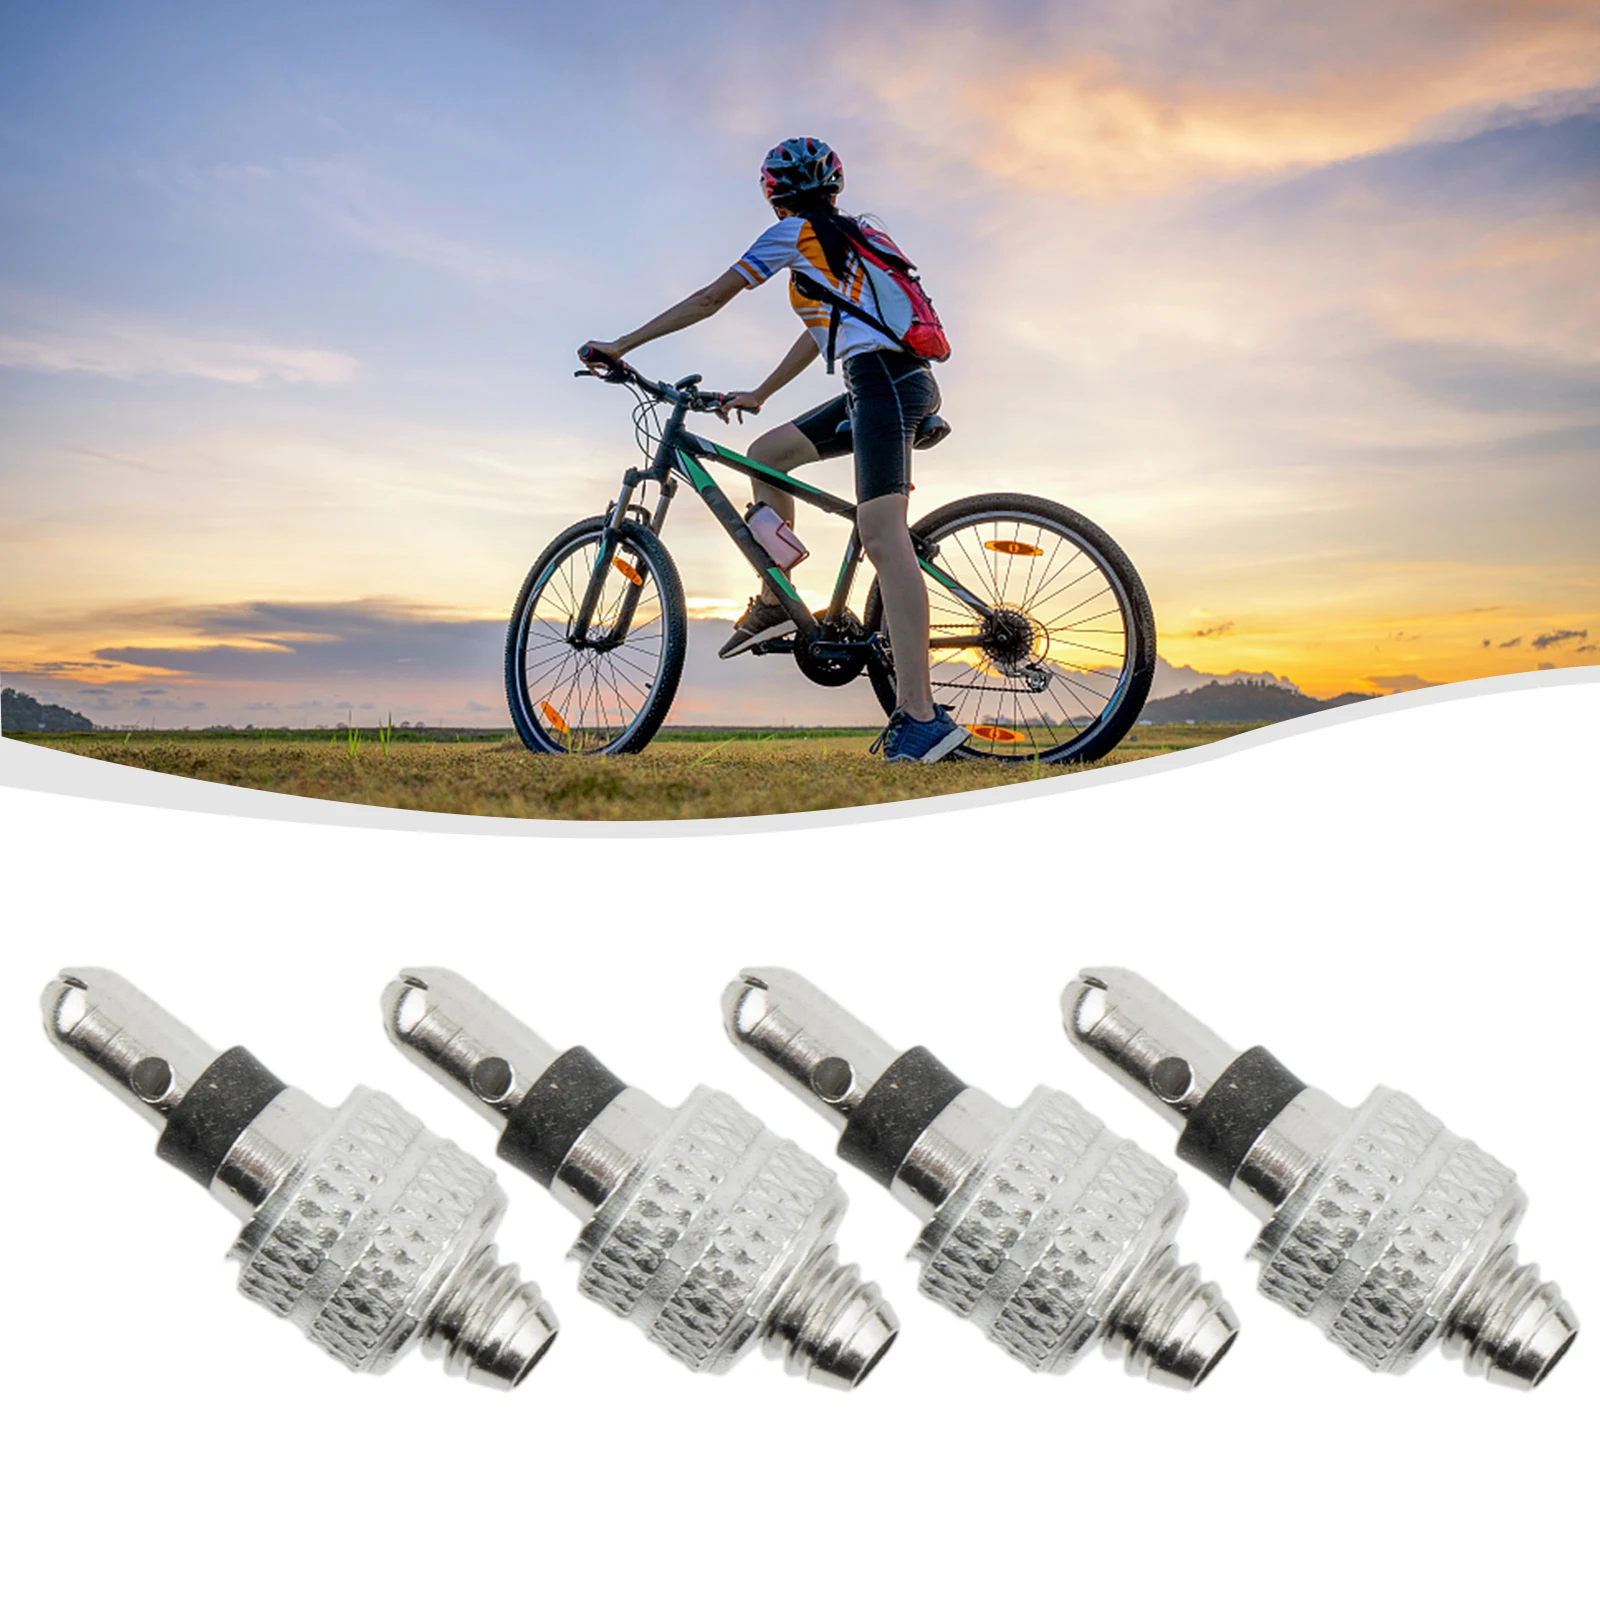 Велосипедные запчасти 4 X велосипедных клапана Серебристый Сменный набор из нержавеющей стали Для обслуживания велосипеда Велосипедные Инструменты для колеса